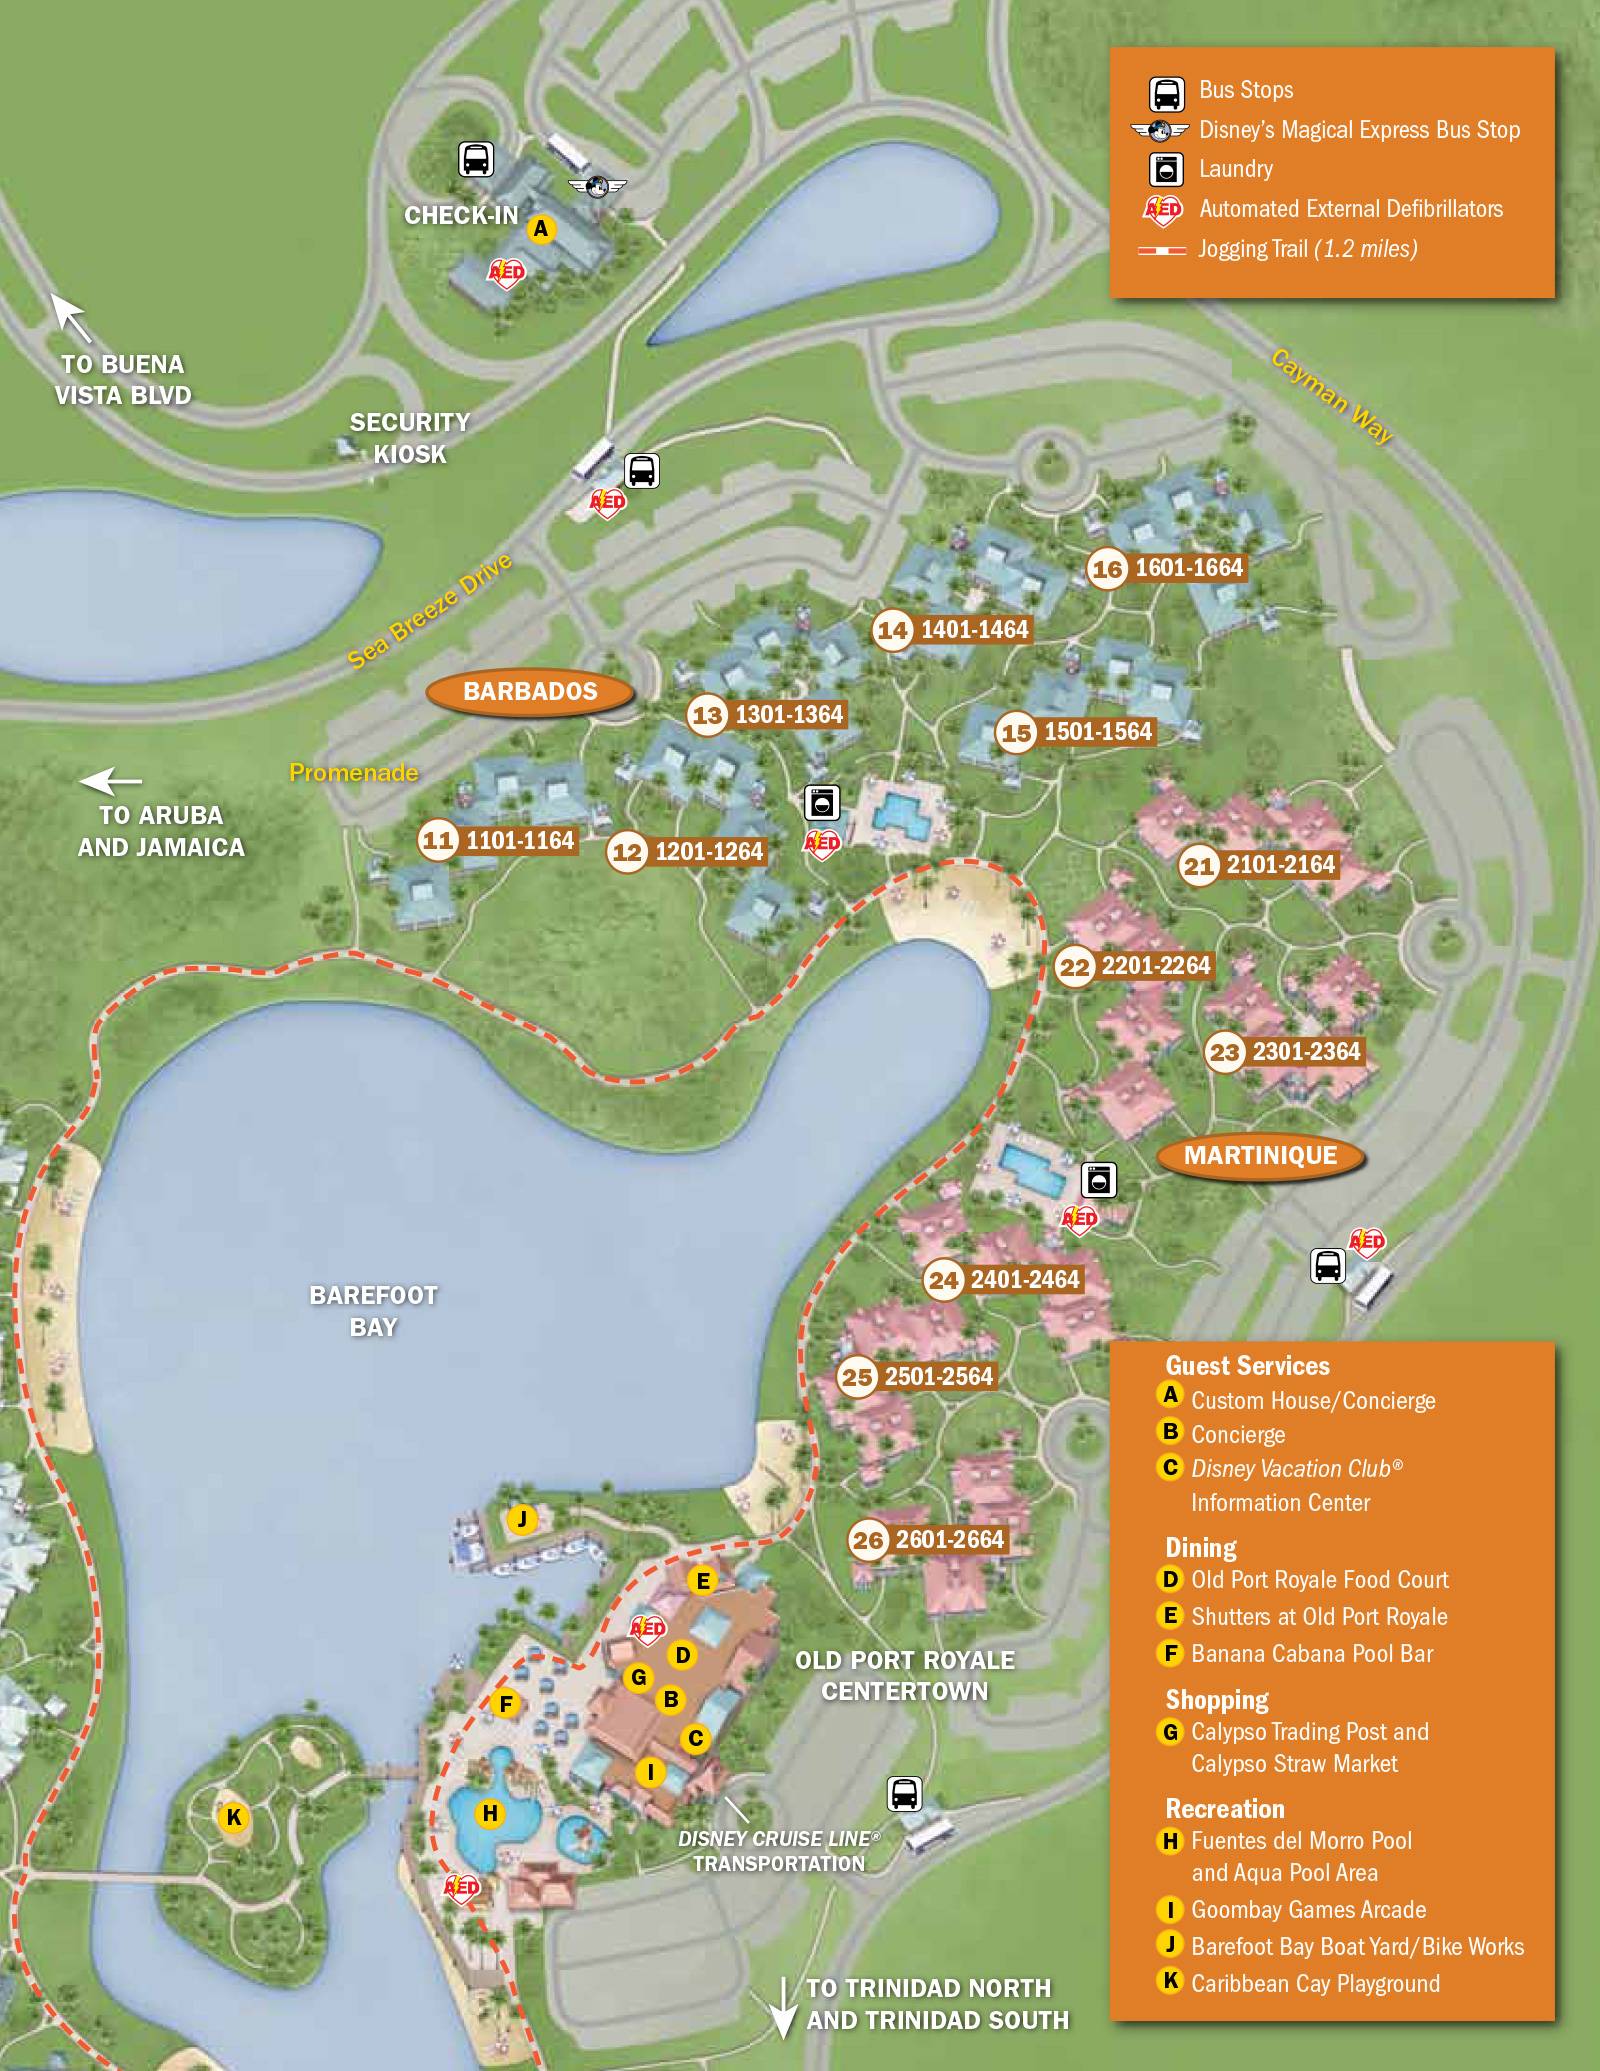 2013 Caribbean Beach Resort guide map